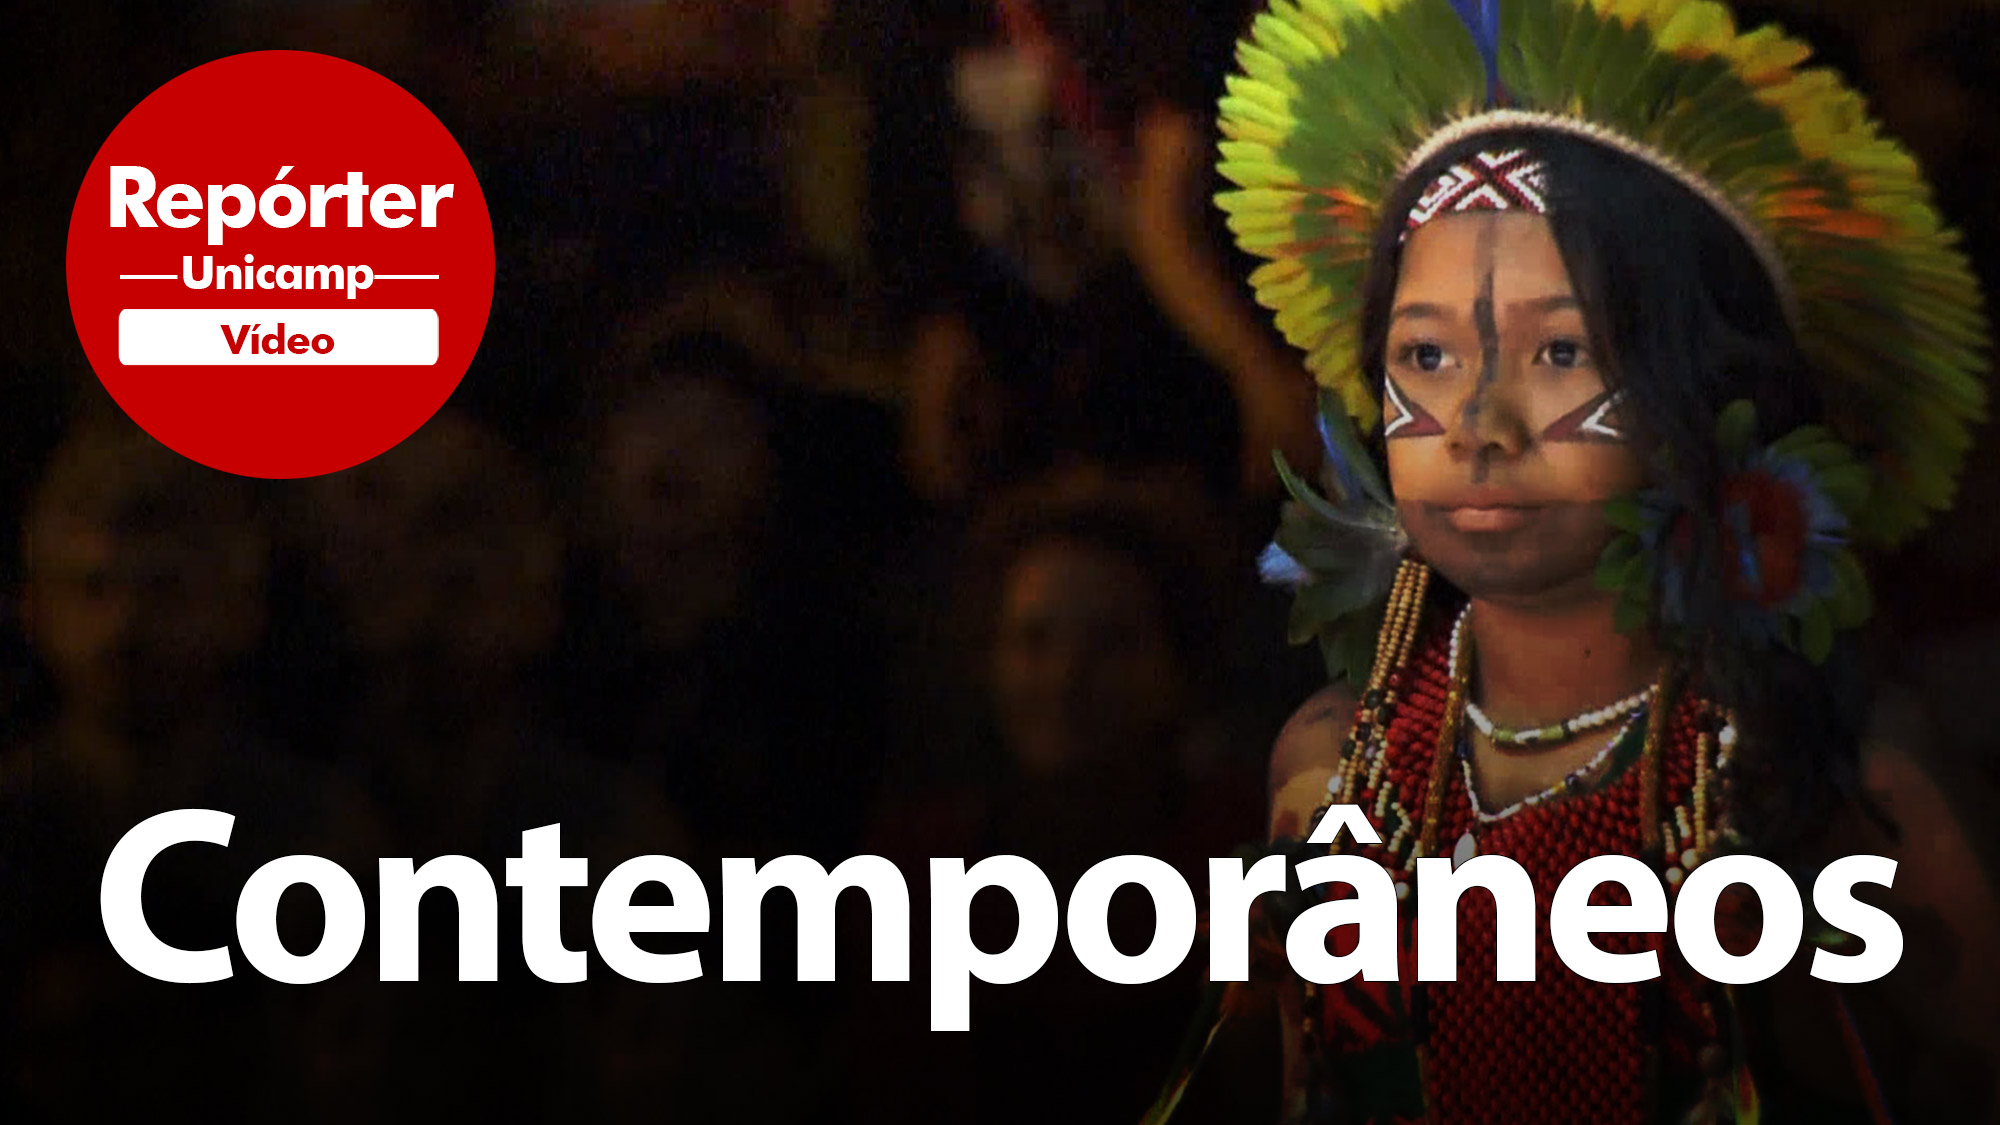 Imagem de indígena à direita. A palavra Contemporâneos está escrita.